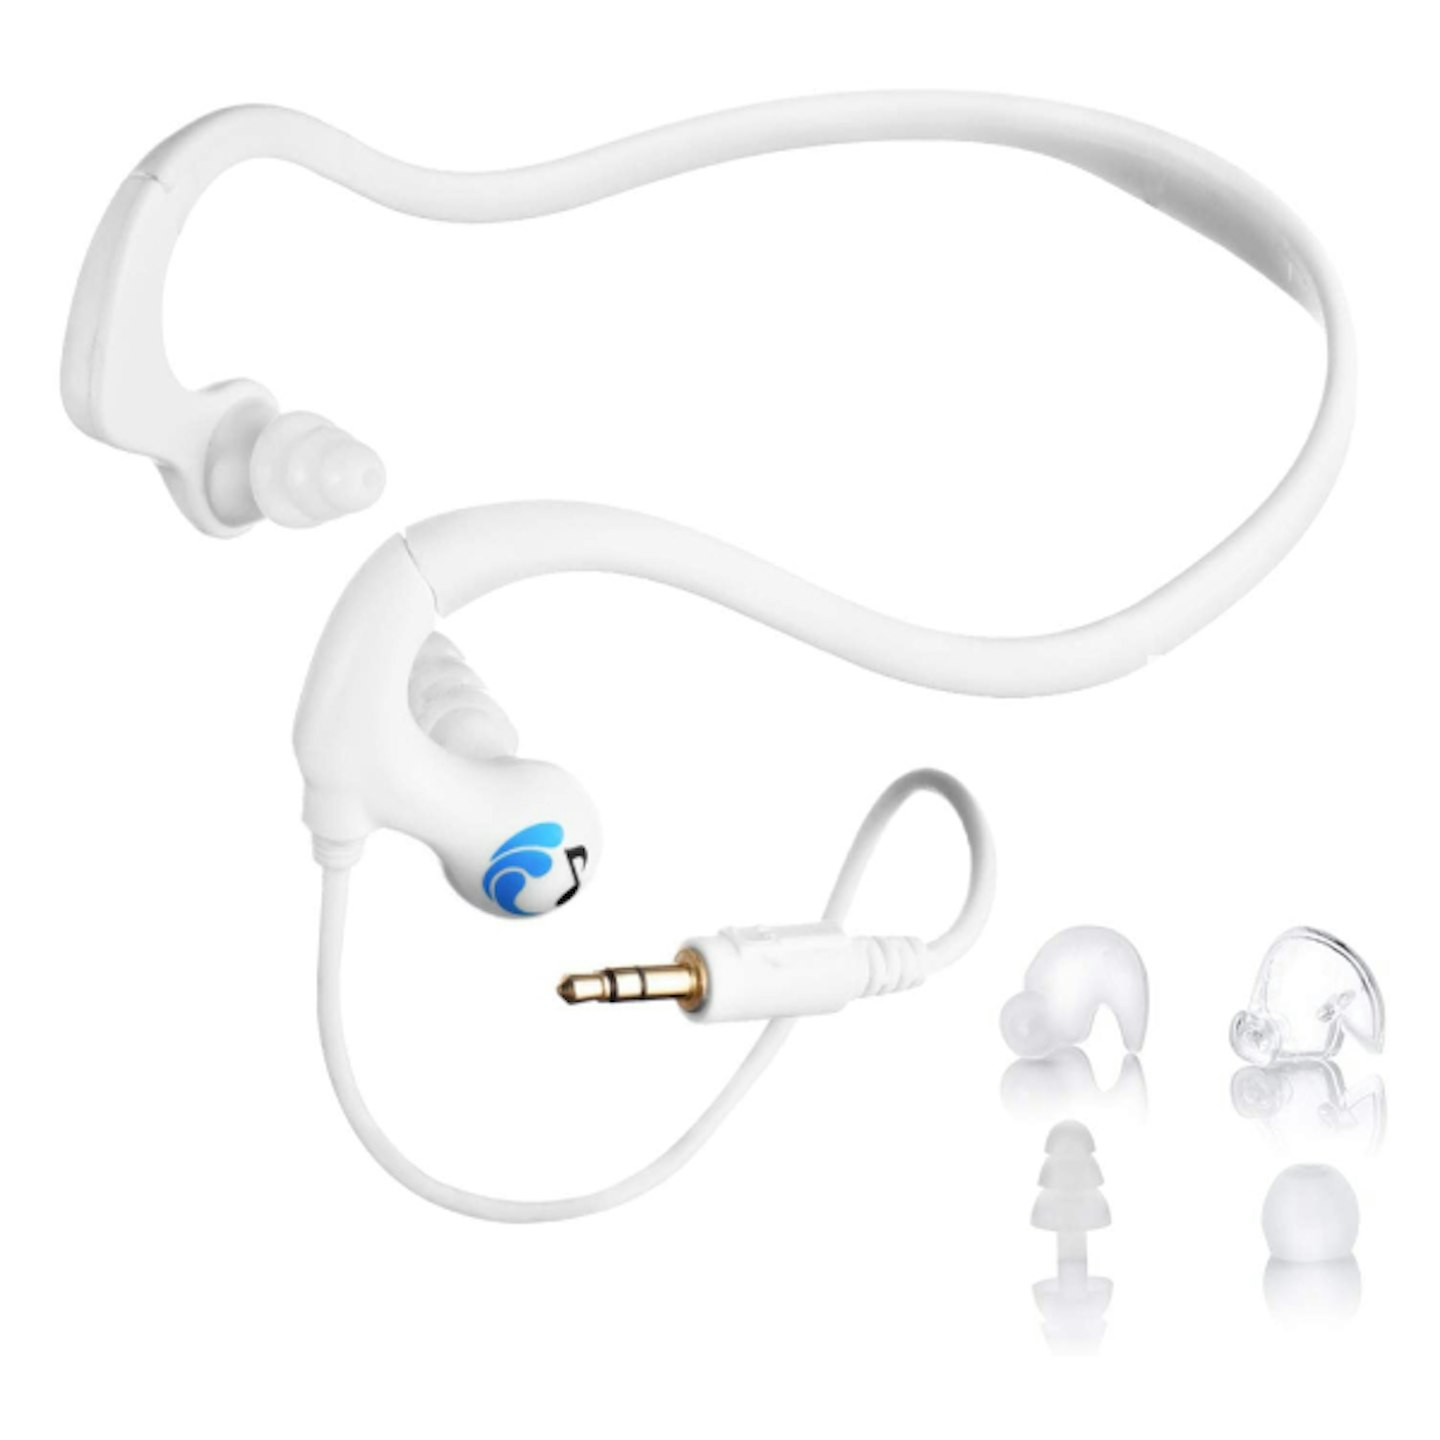 HydroActive waterpoof headphones